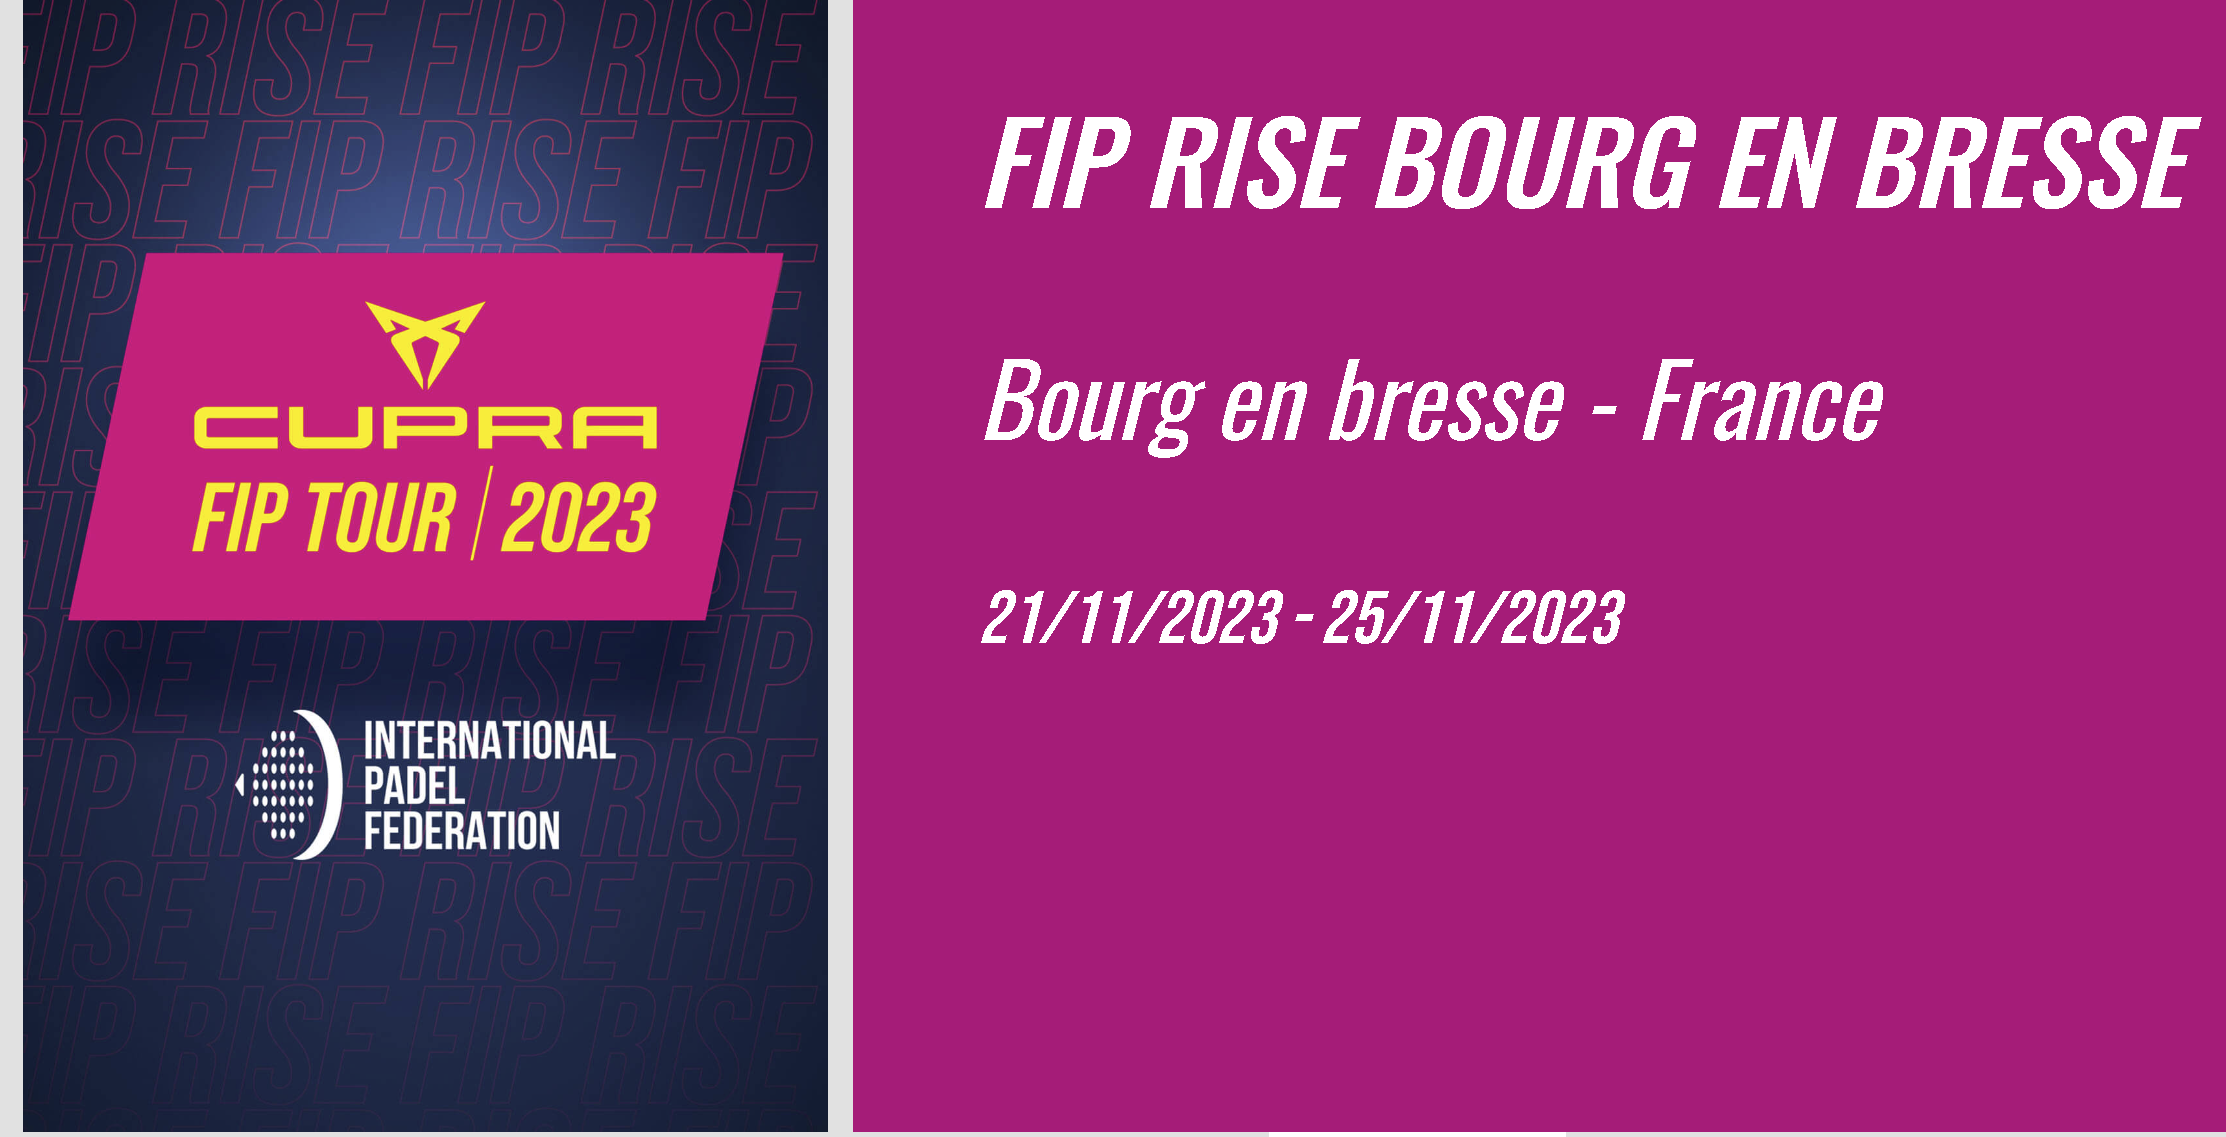 FIP RISE Bourg-en-Bresse: Die Kasse ist bereits geöffnet!